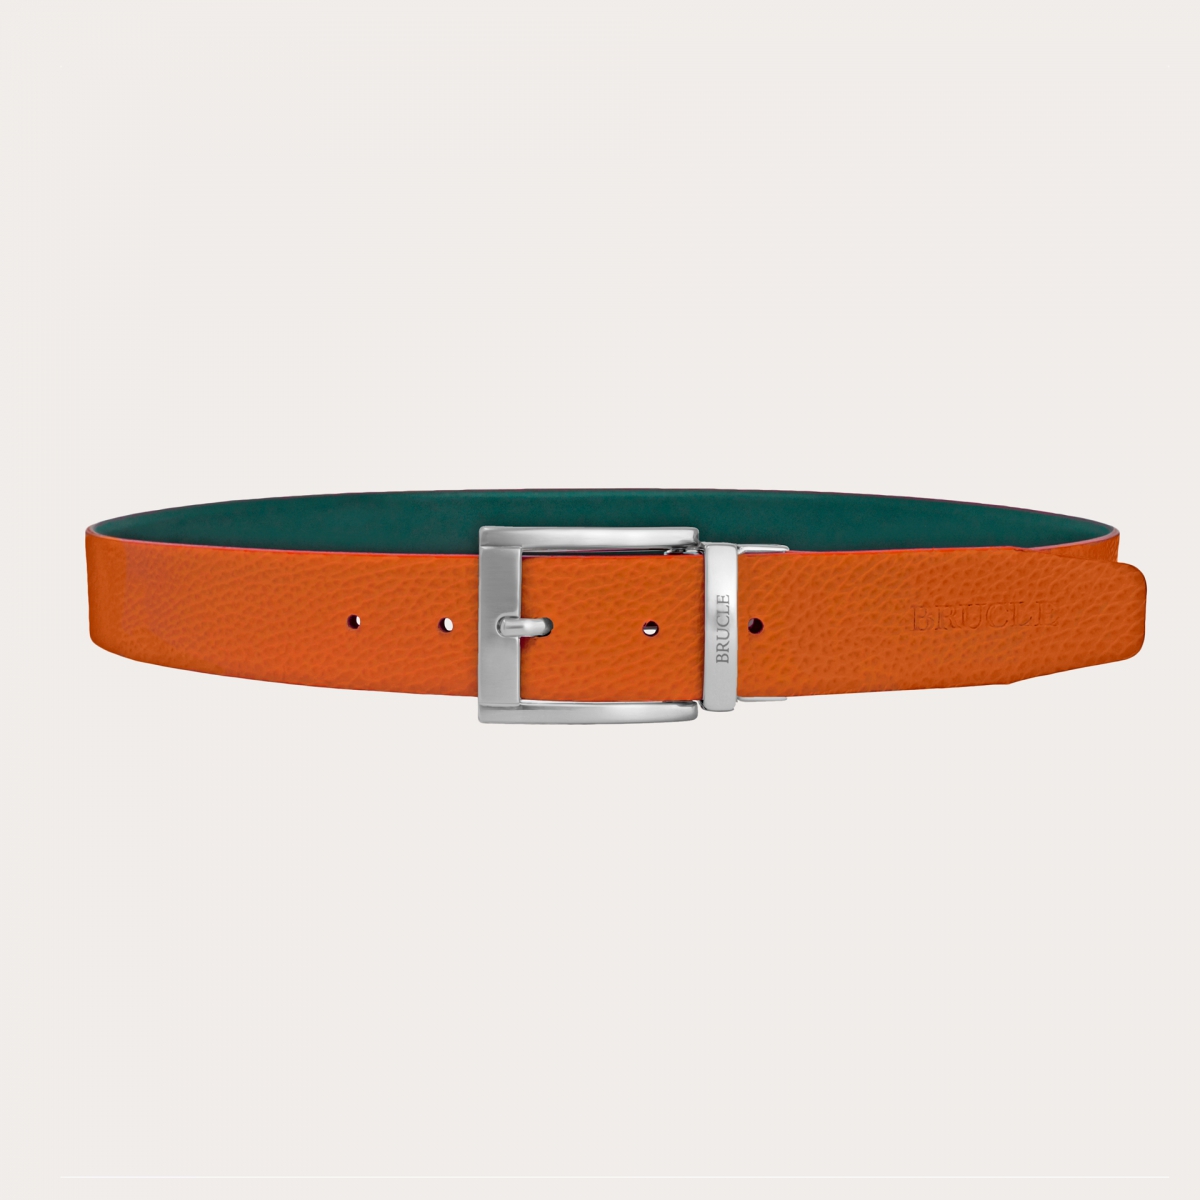 BRUCLE Cinturón verde y naranja reversible